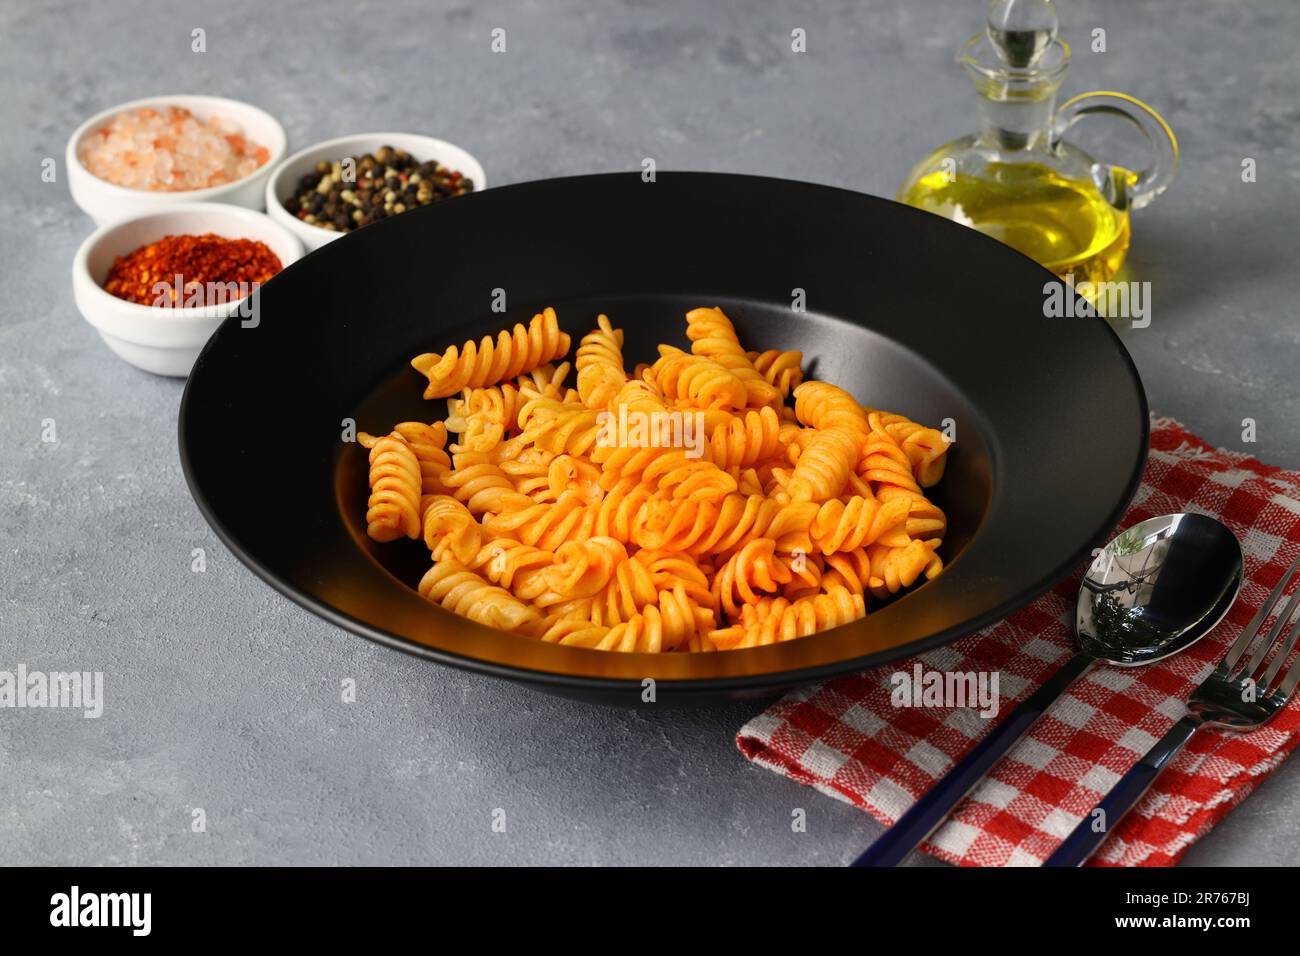 Fusilli pasta in tomato sauce. gray background. Italian food concept Stock Photo